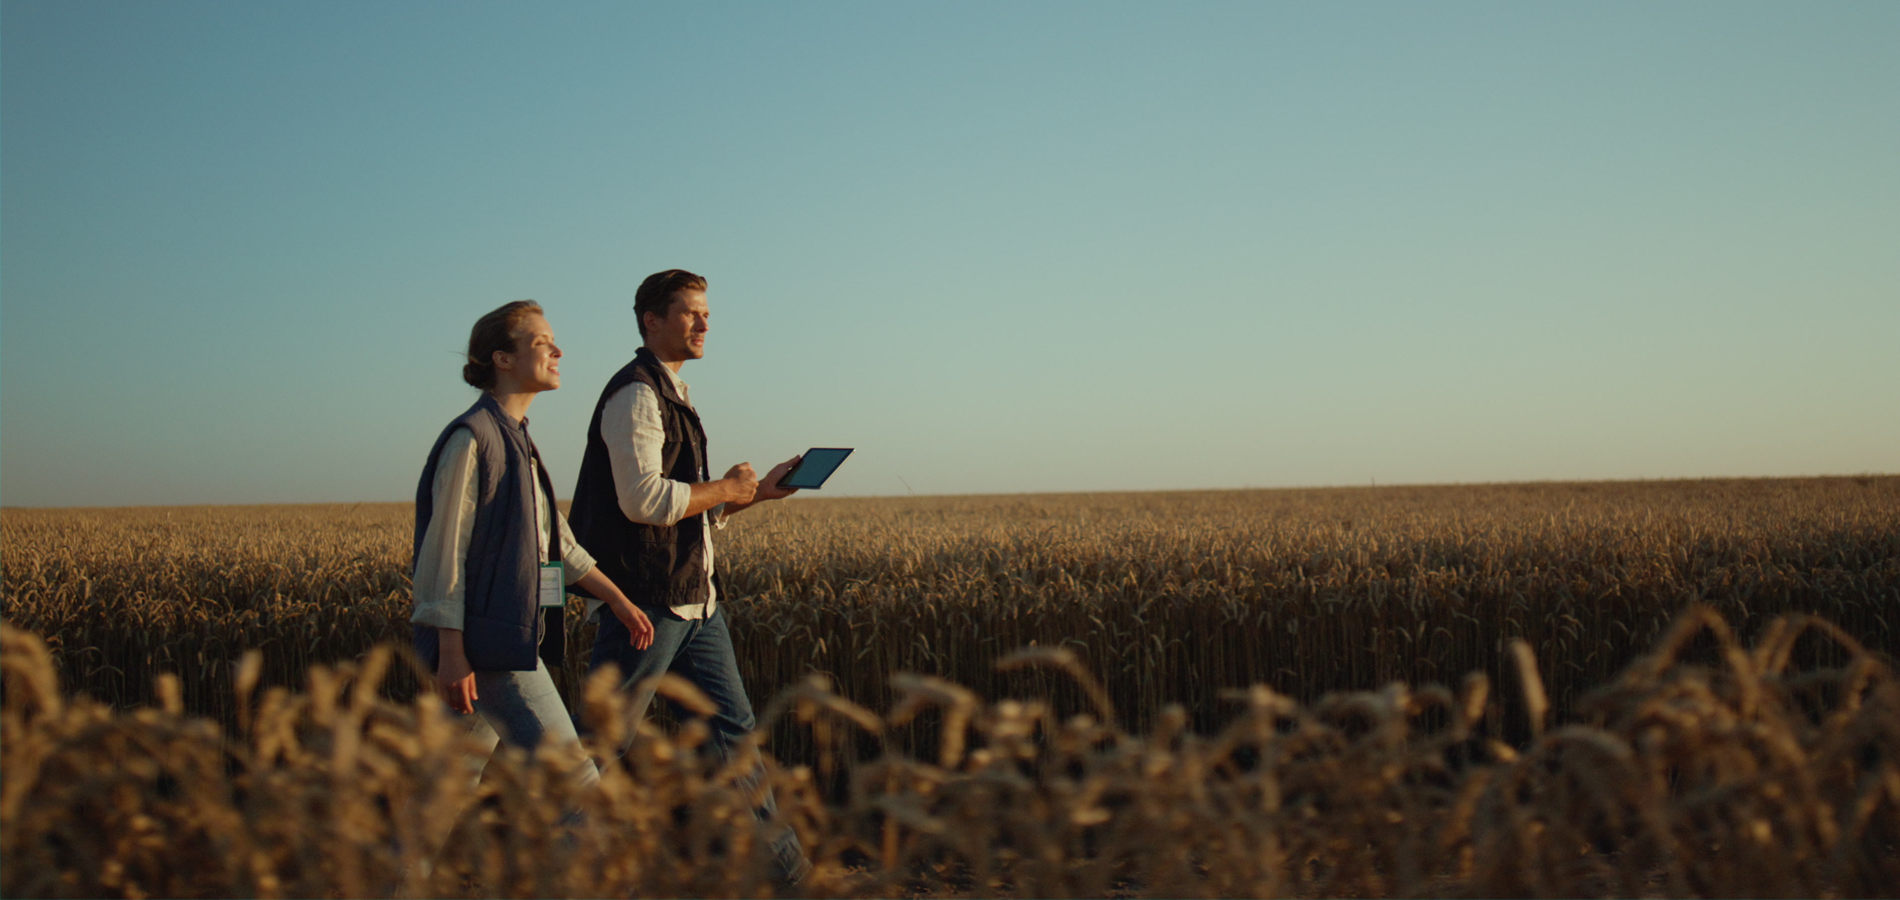 Farmers with Tablet Walking in Wheat Field